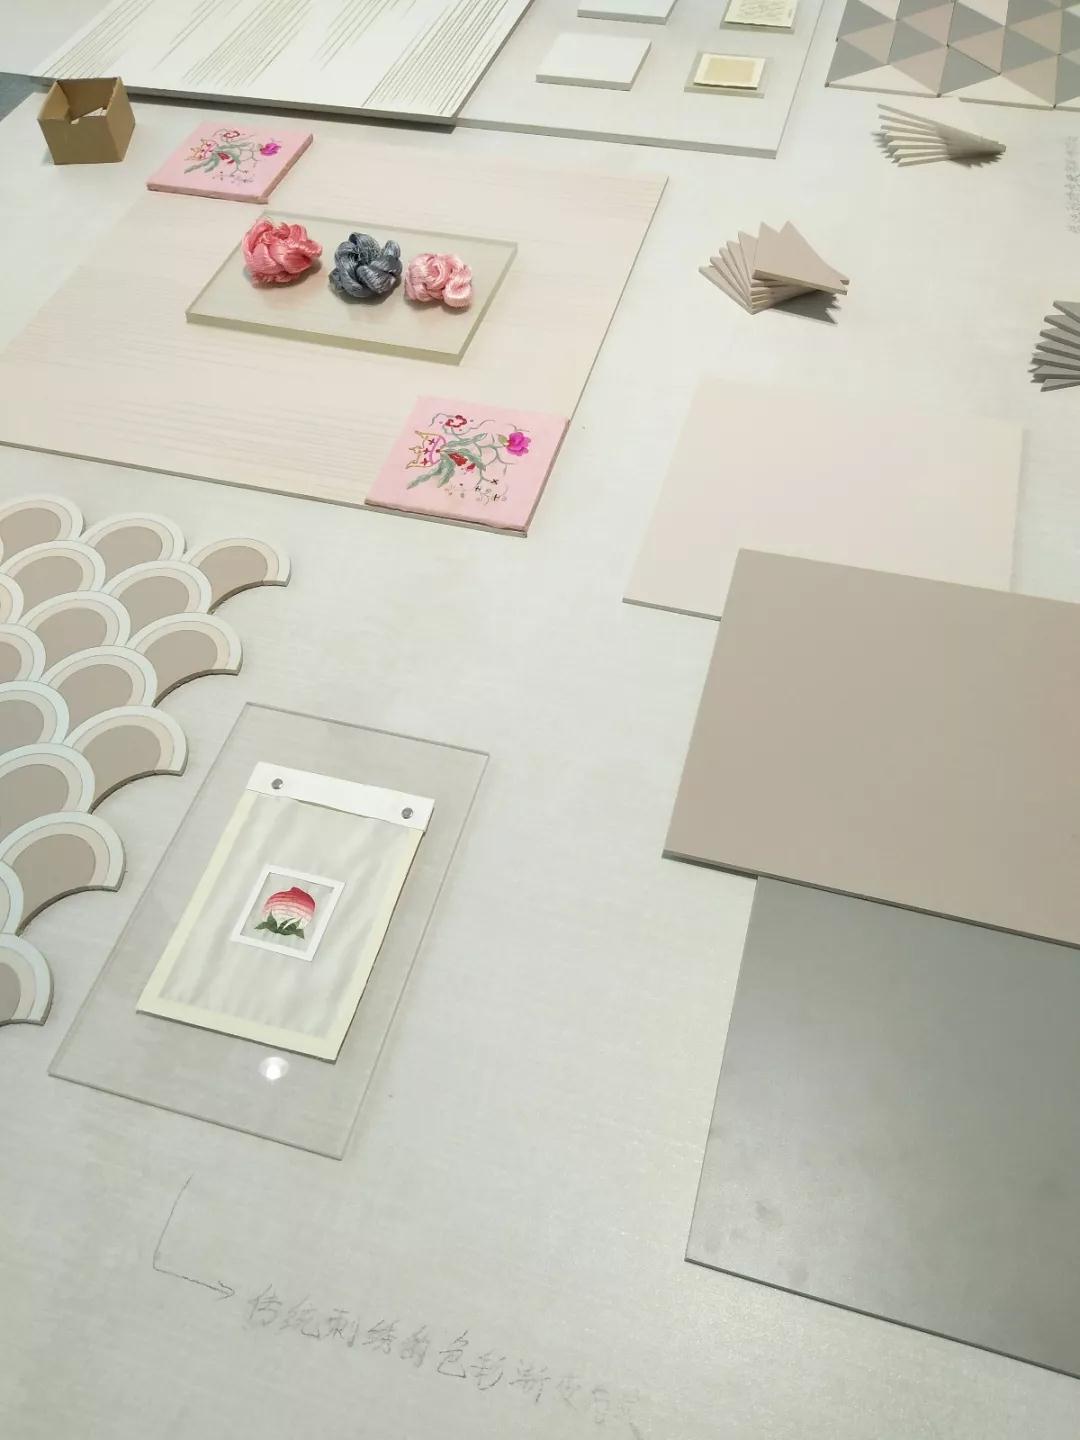 2018广州设计周上的那些石材产品展示